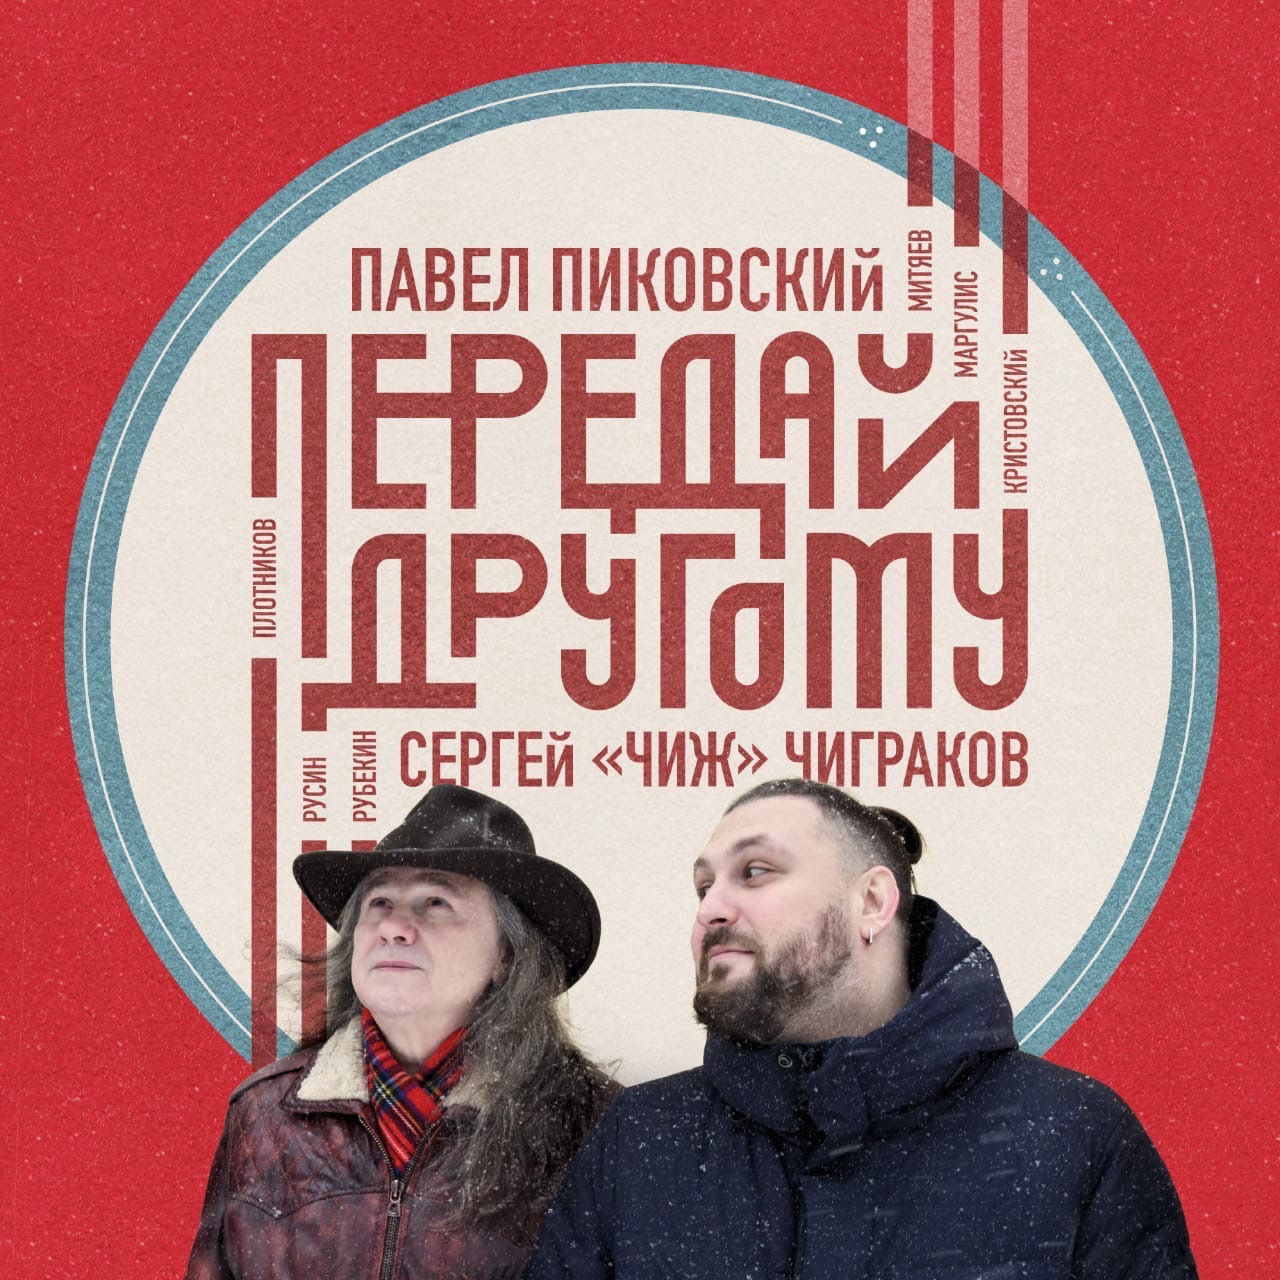 Павел Пиковский и Сергей Чиграков записали альбом "Передай другому"